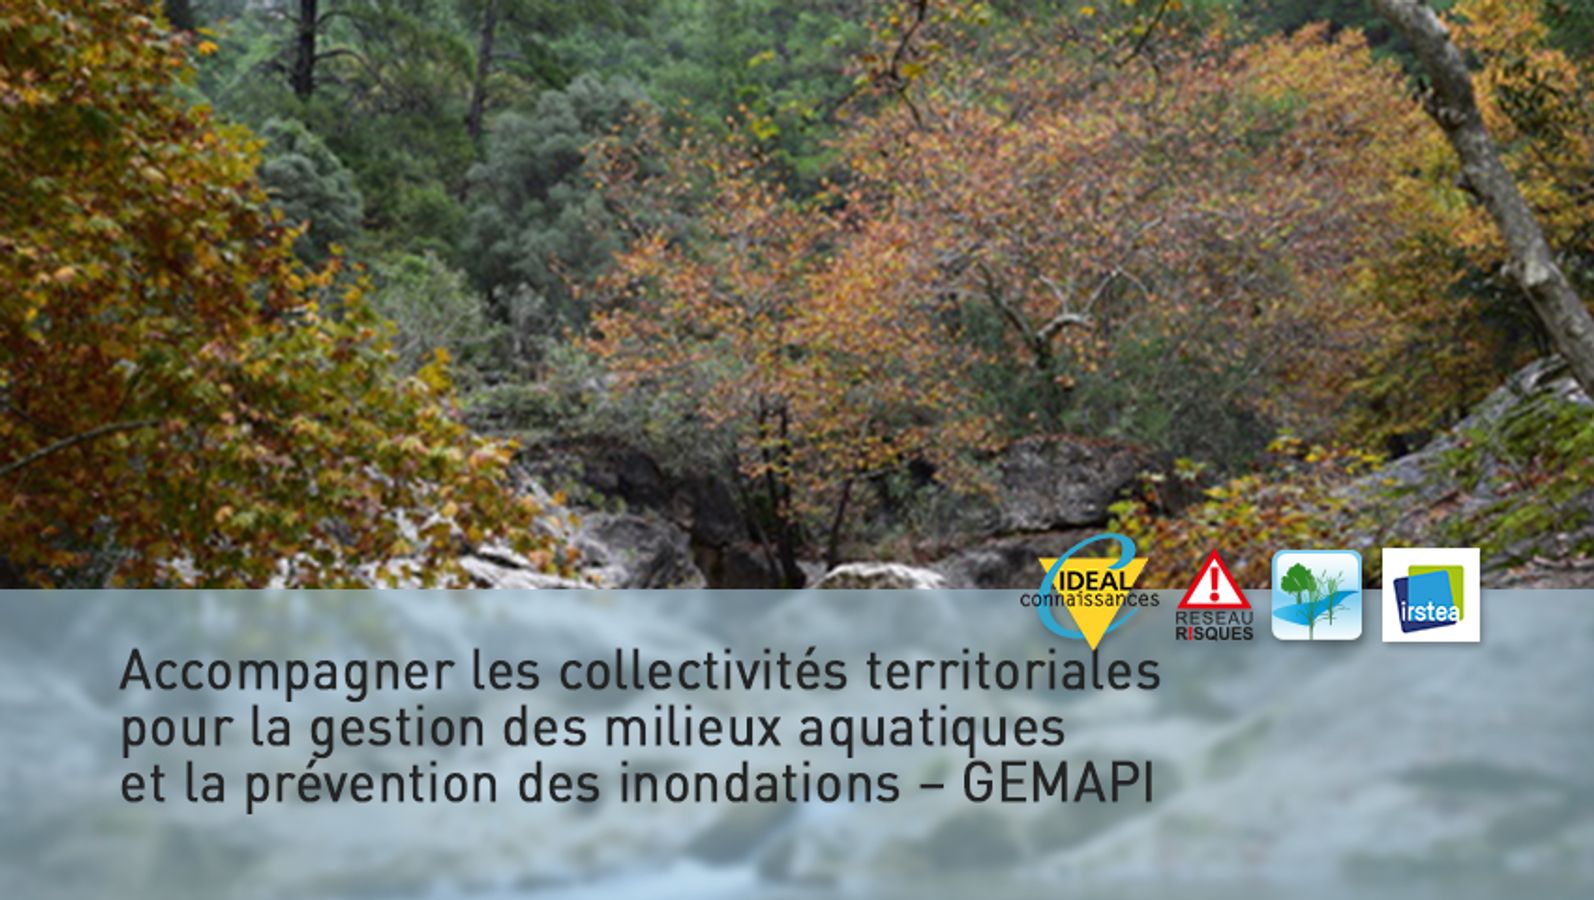 Accompagner les collectivités territoriales pour la gestion des milieux aquatiques et la prévention des inondations – GEMAPI.